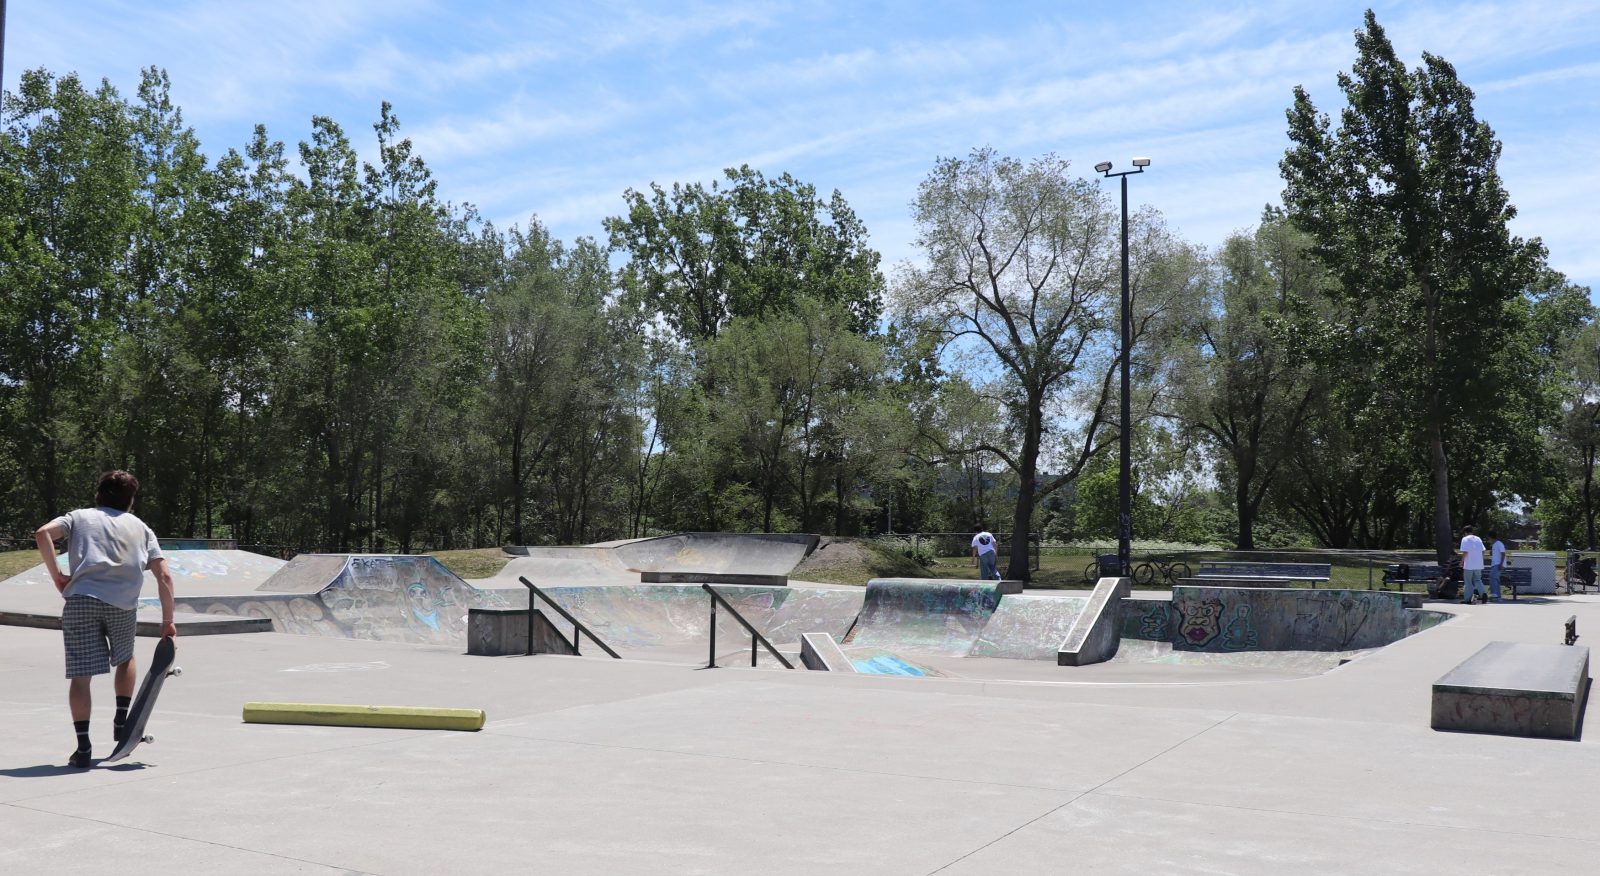 La zone jeunesse des environs du skatepark pourrait être bonifiée